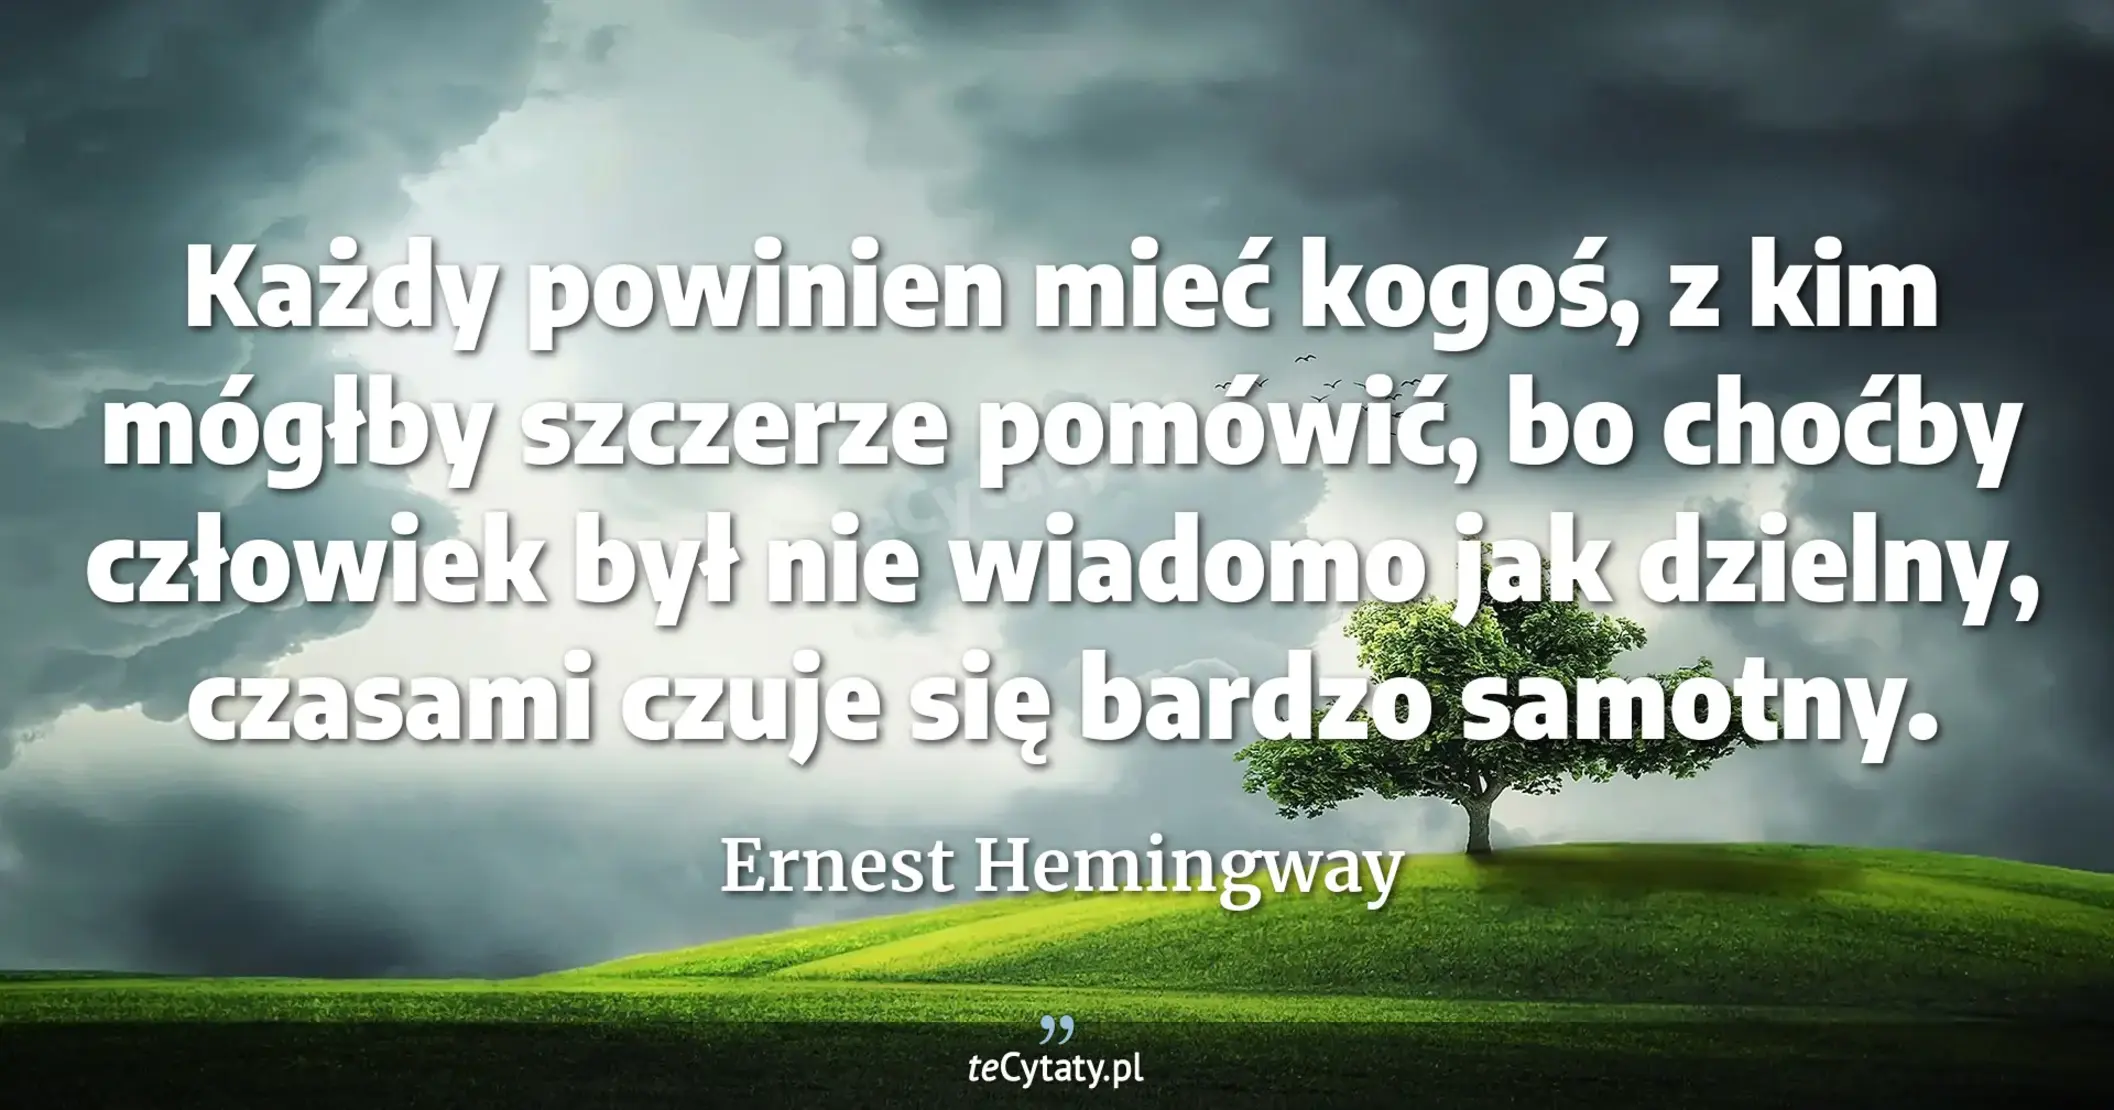 Każdy powinien mieć kogoś, z kim mógłby szczerze pomówić, bo choćby człowiek był nie wiadomo jak dzielny, czasami czuje się bardzo samotny. - Ernest Hemingway